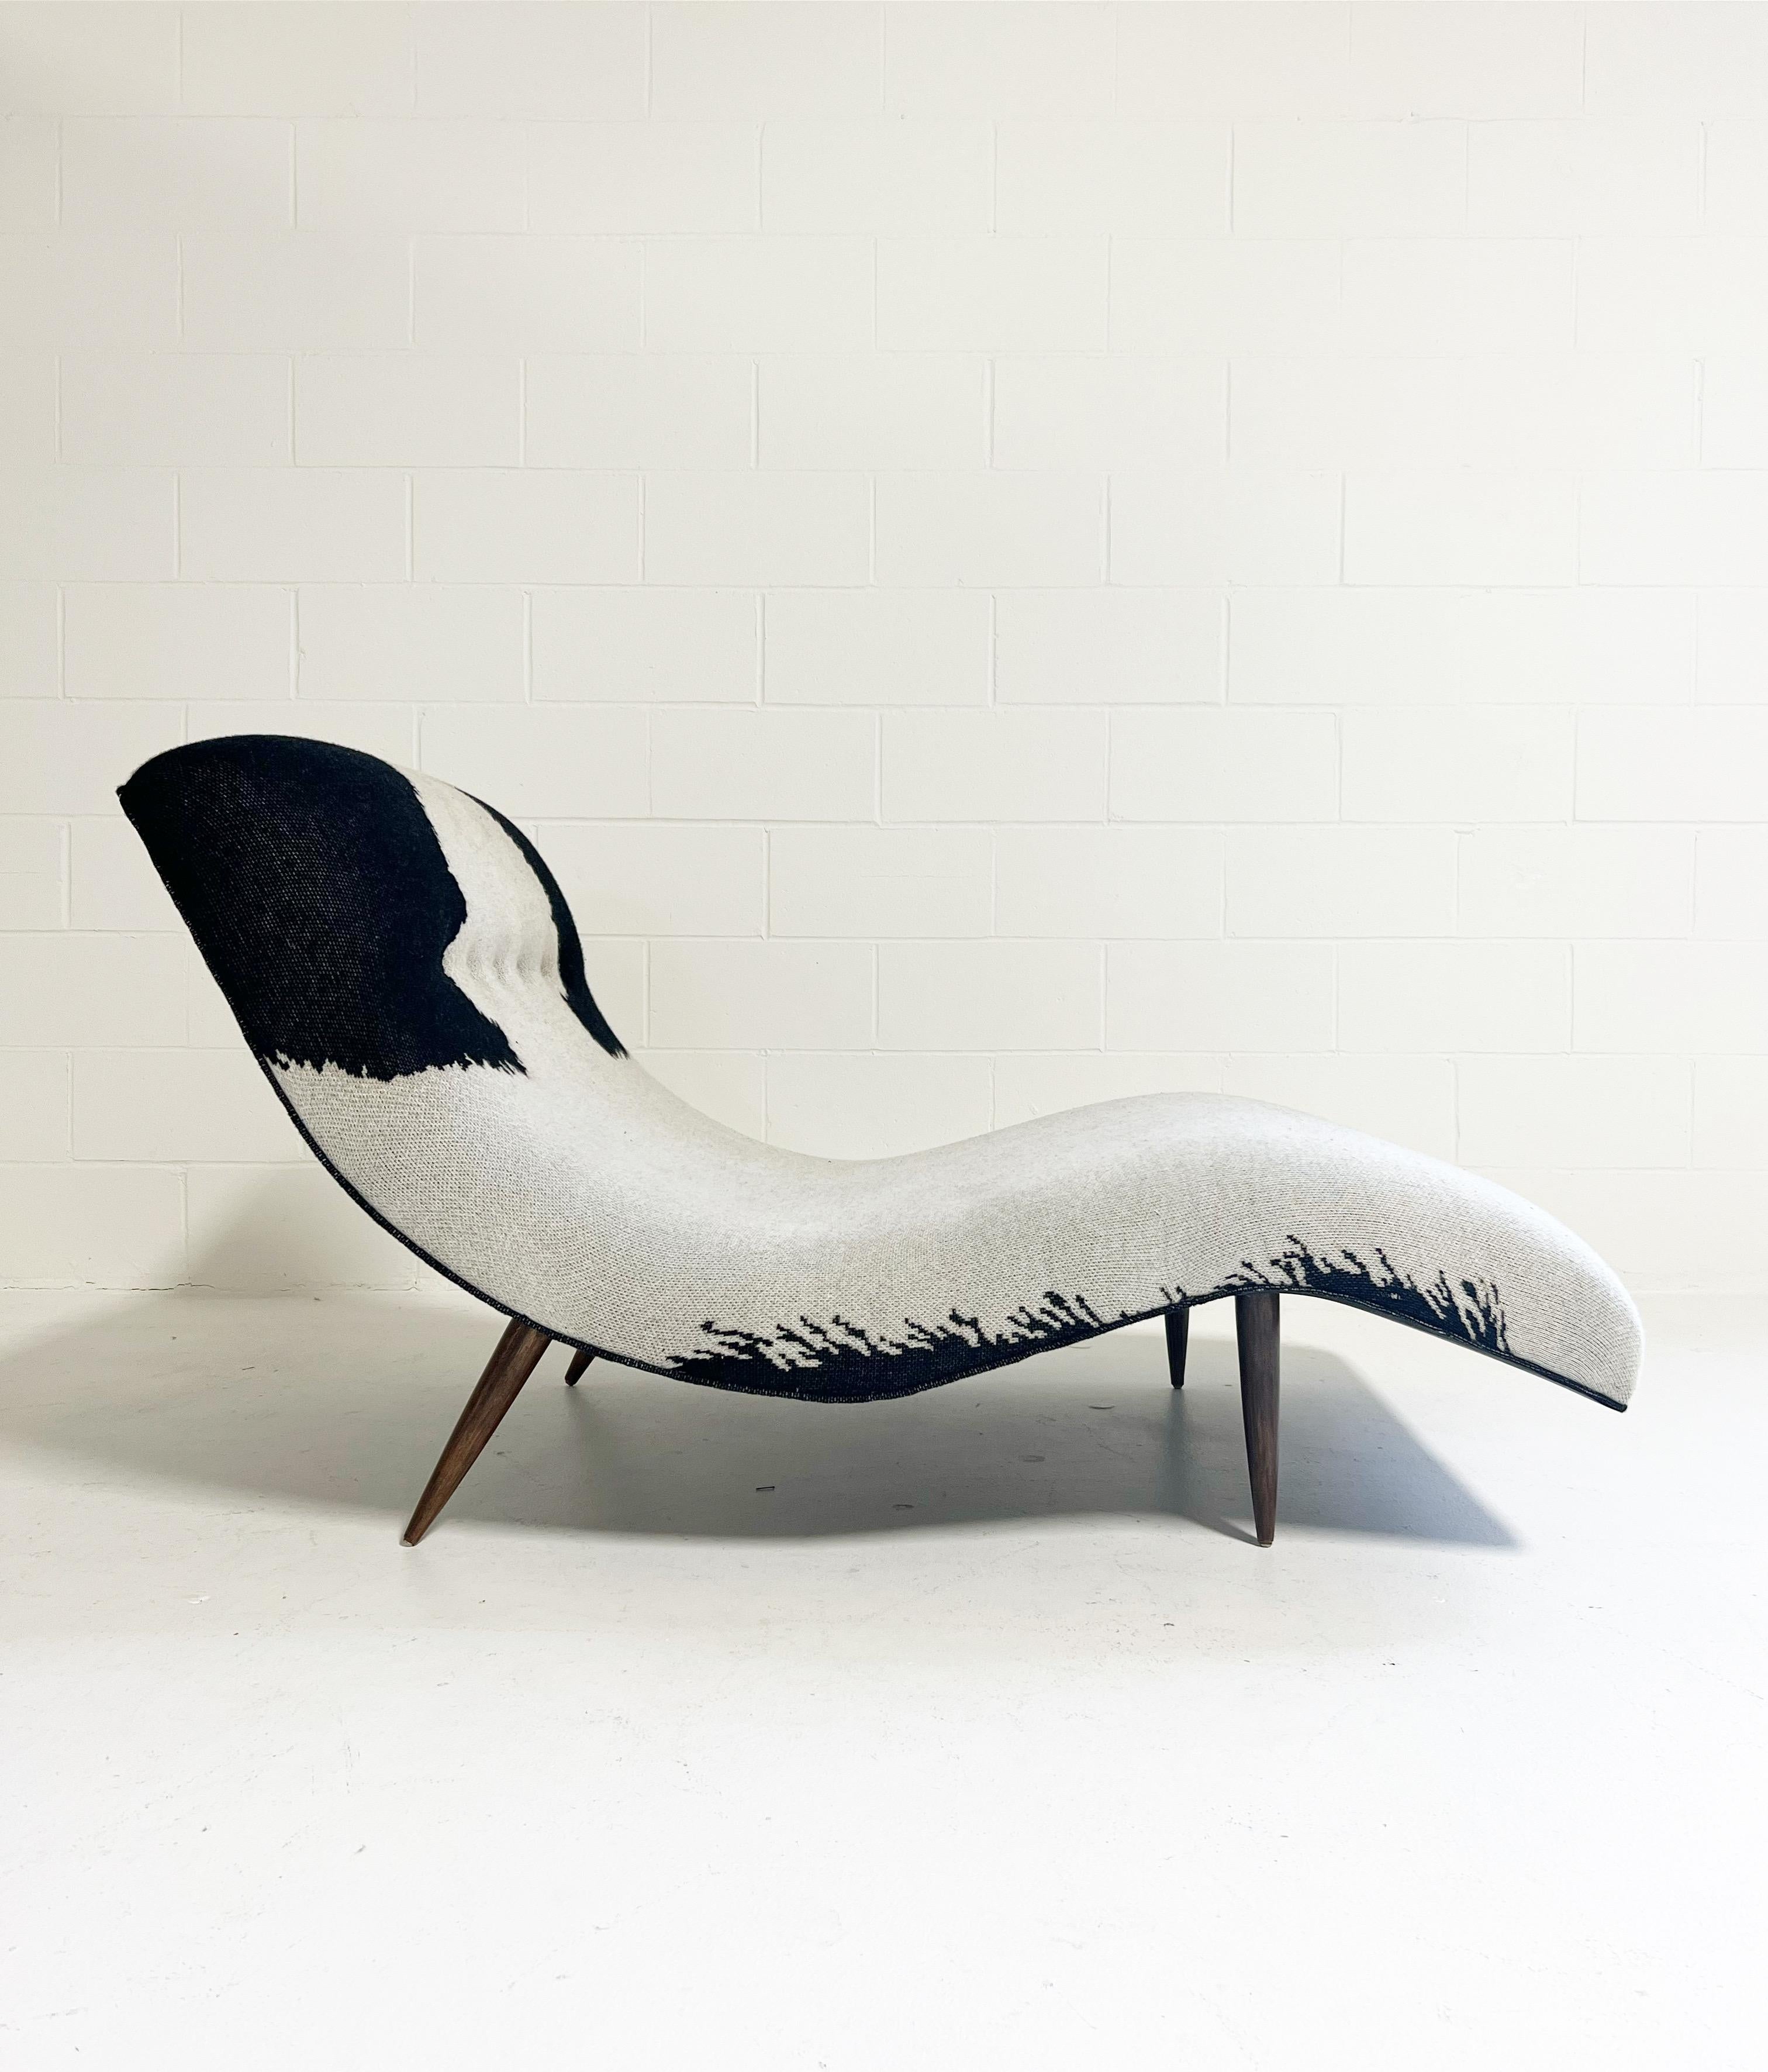 Dies ist eine originale Adrian Pearsall Wave Chaise Lounge. Adrian Pearsall begann seine Karriere als Architekt, beschäftigte sich aber auch mit Möbeldesign und wurde schnell zu einem der führenden Vertreter der modernistischen Möbelbewegung. Wir